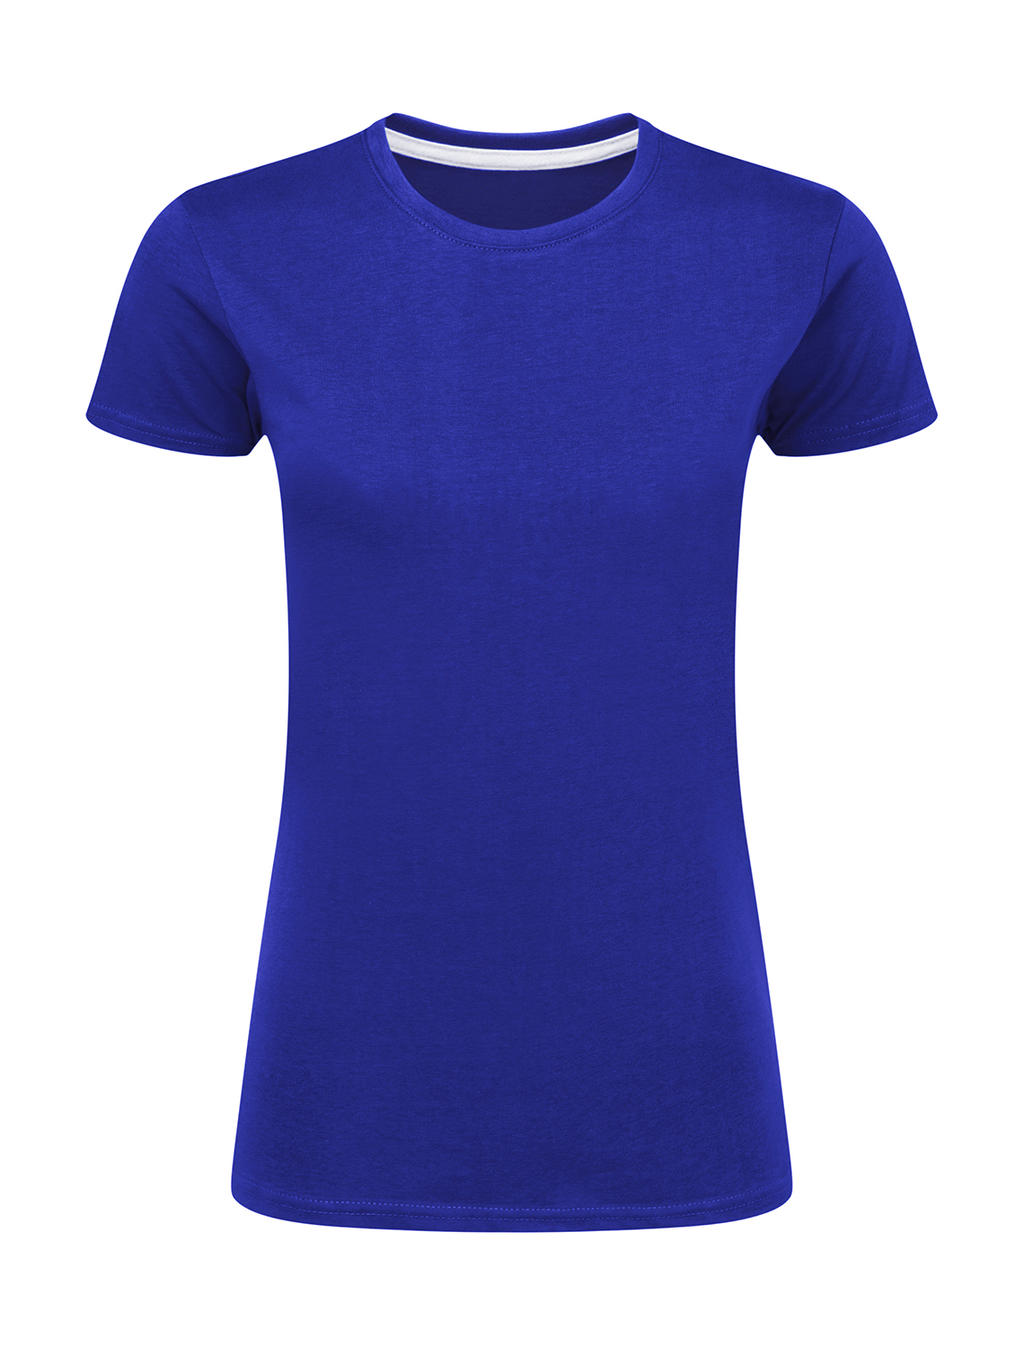 Dokonale potlačiteľné dámske tričko bez štítku - royal blue